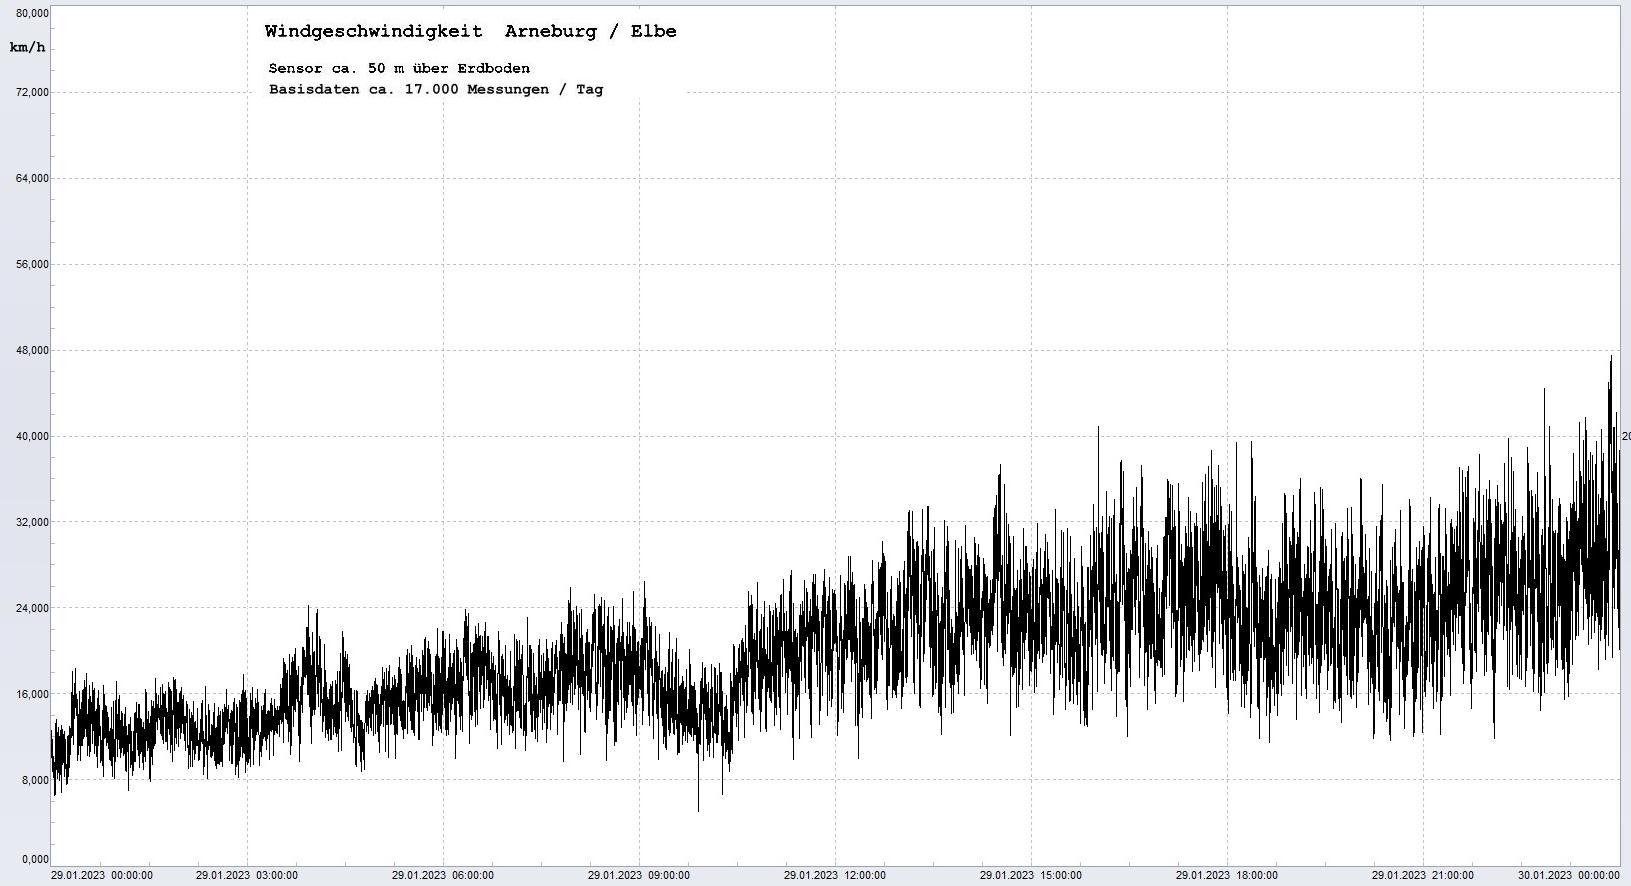 Arneburg Tages-Diagramm Winddaten, 29.01.2023
  Diagramm, Sensor auf Gebude, ca. 50 m ber Erdboden, Basis: 5s-Aufzeichnung